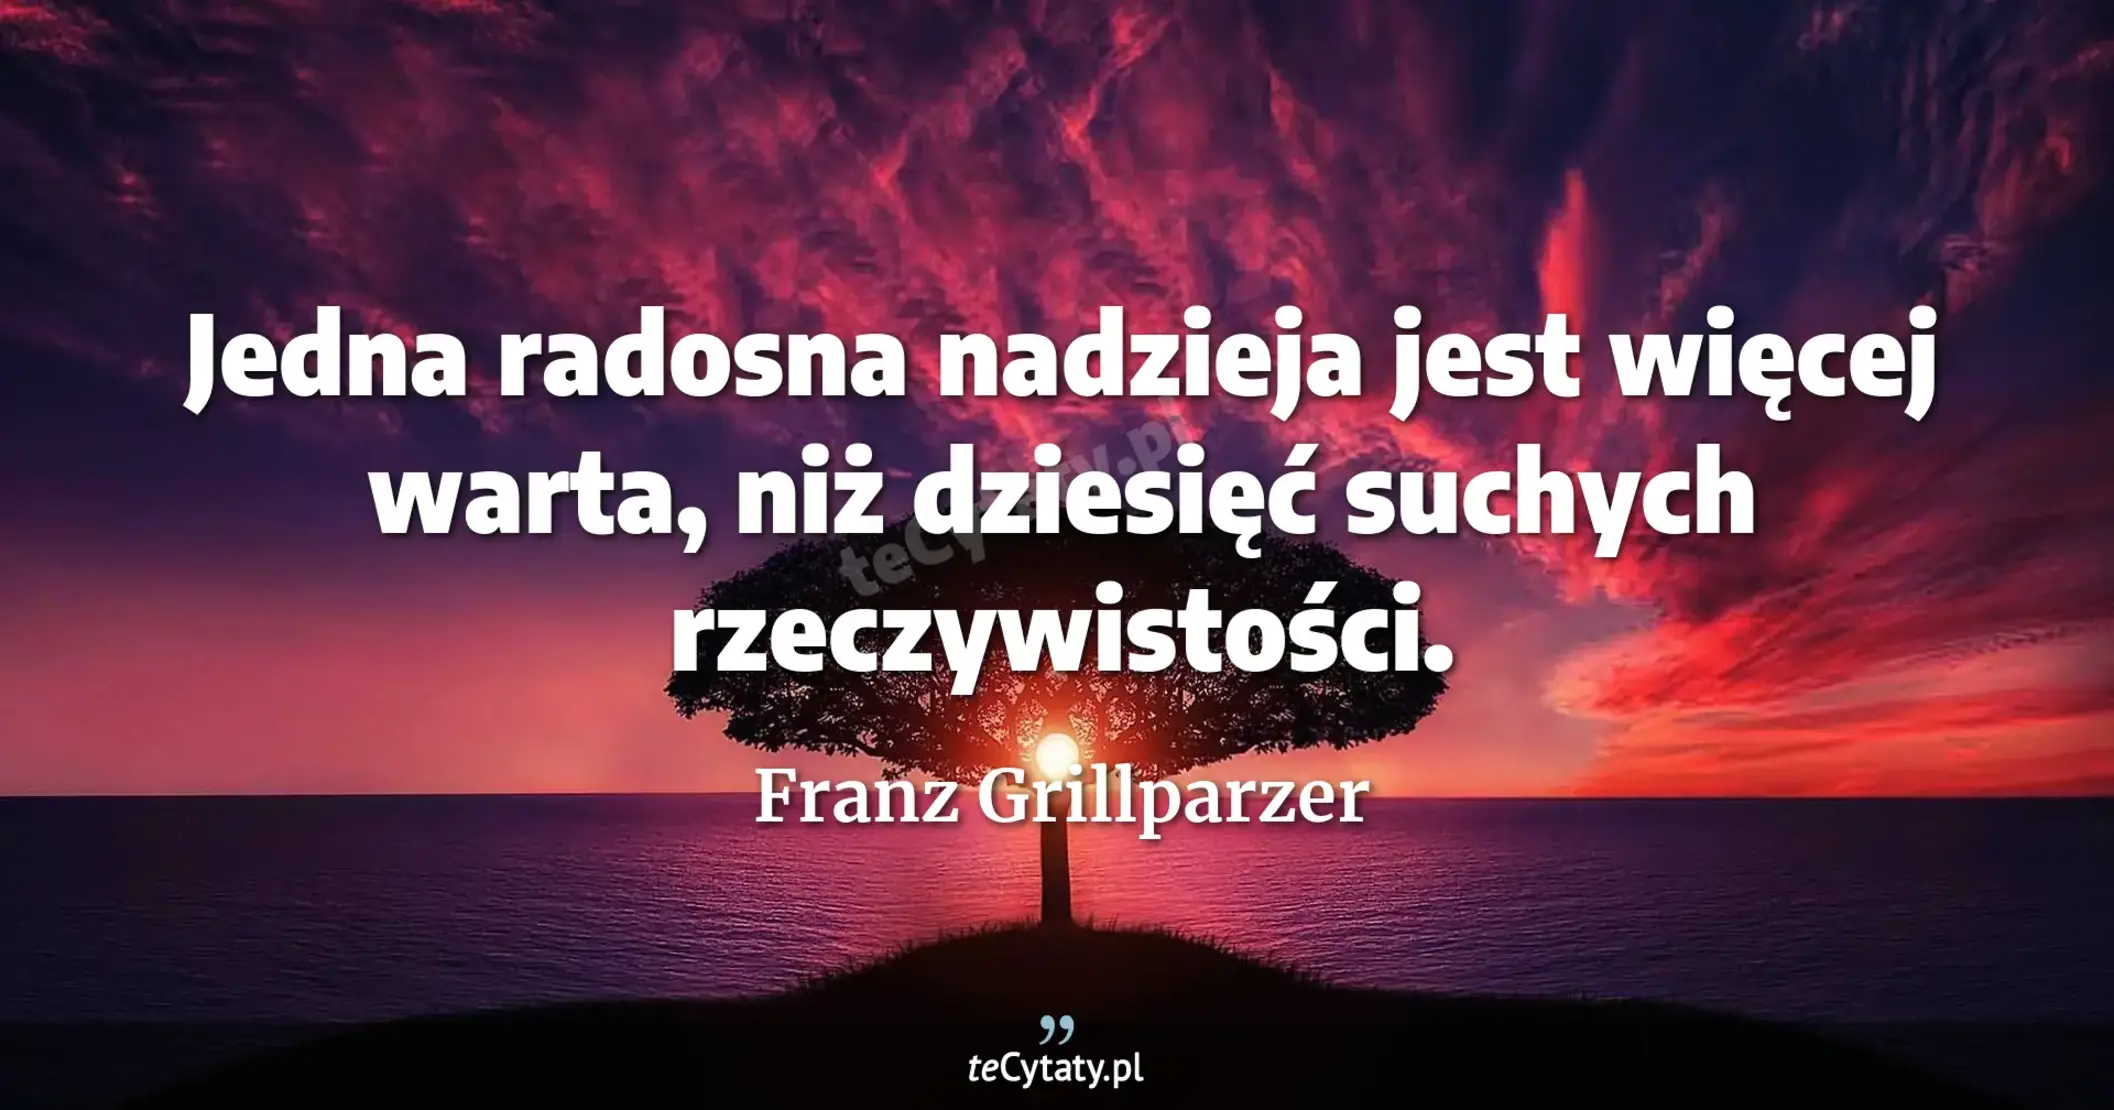 Jedna radosna nadzieja jest więcej warta, niż dziesięć suchych rzeczywistości. - Franz Grillparzer